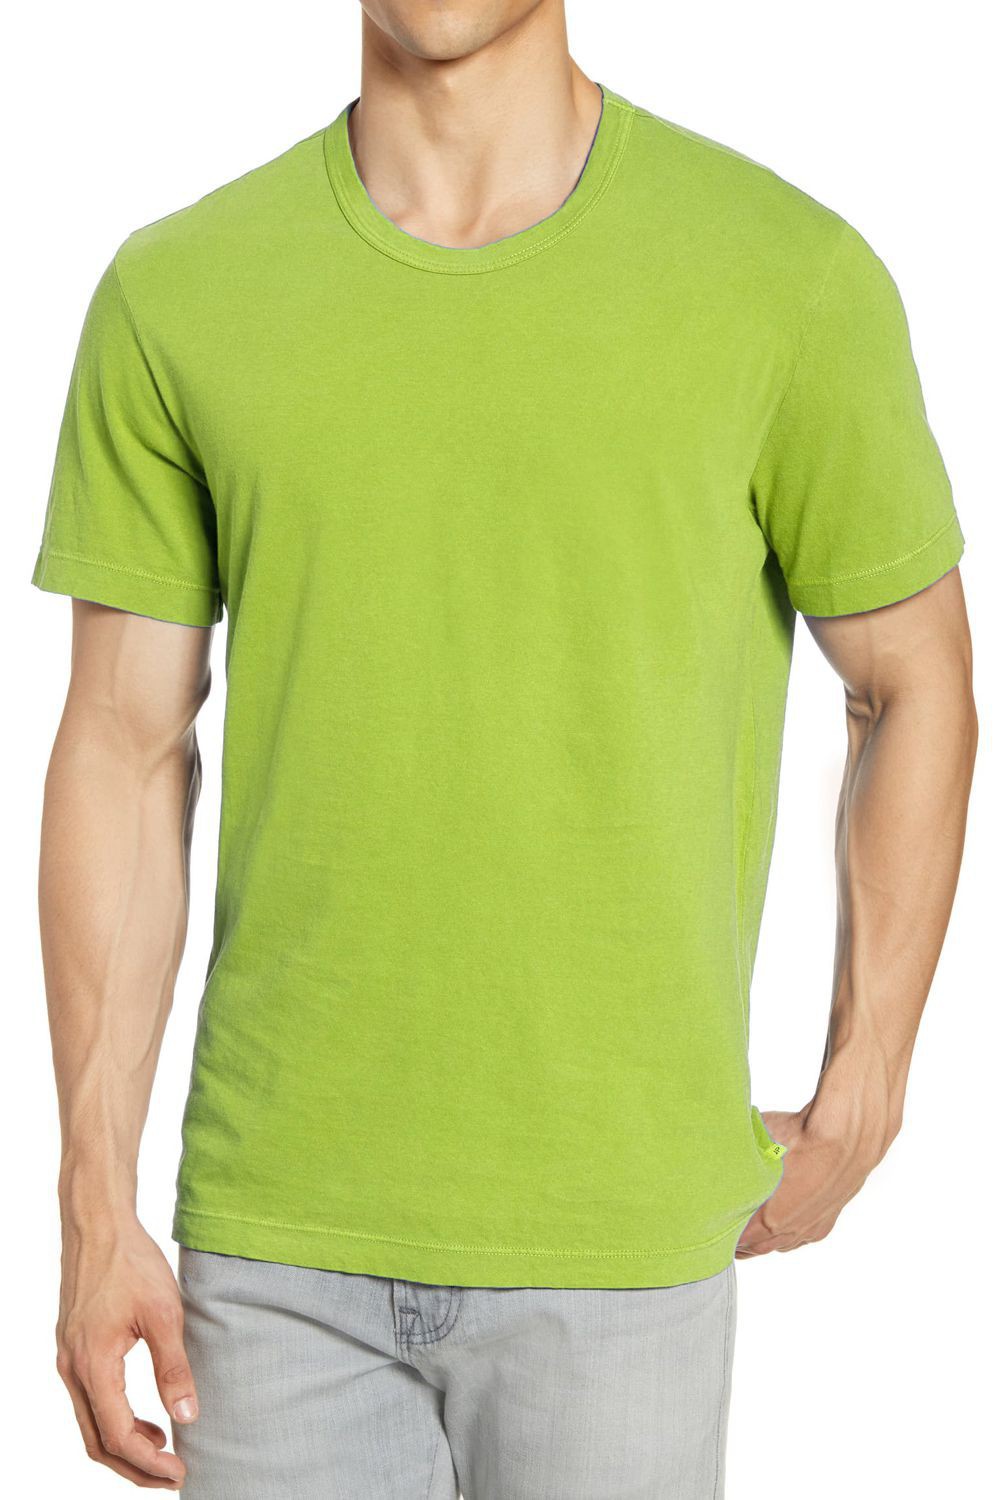 T-Shirt vert manches courtes